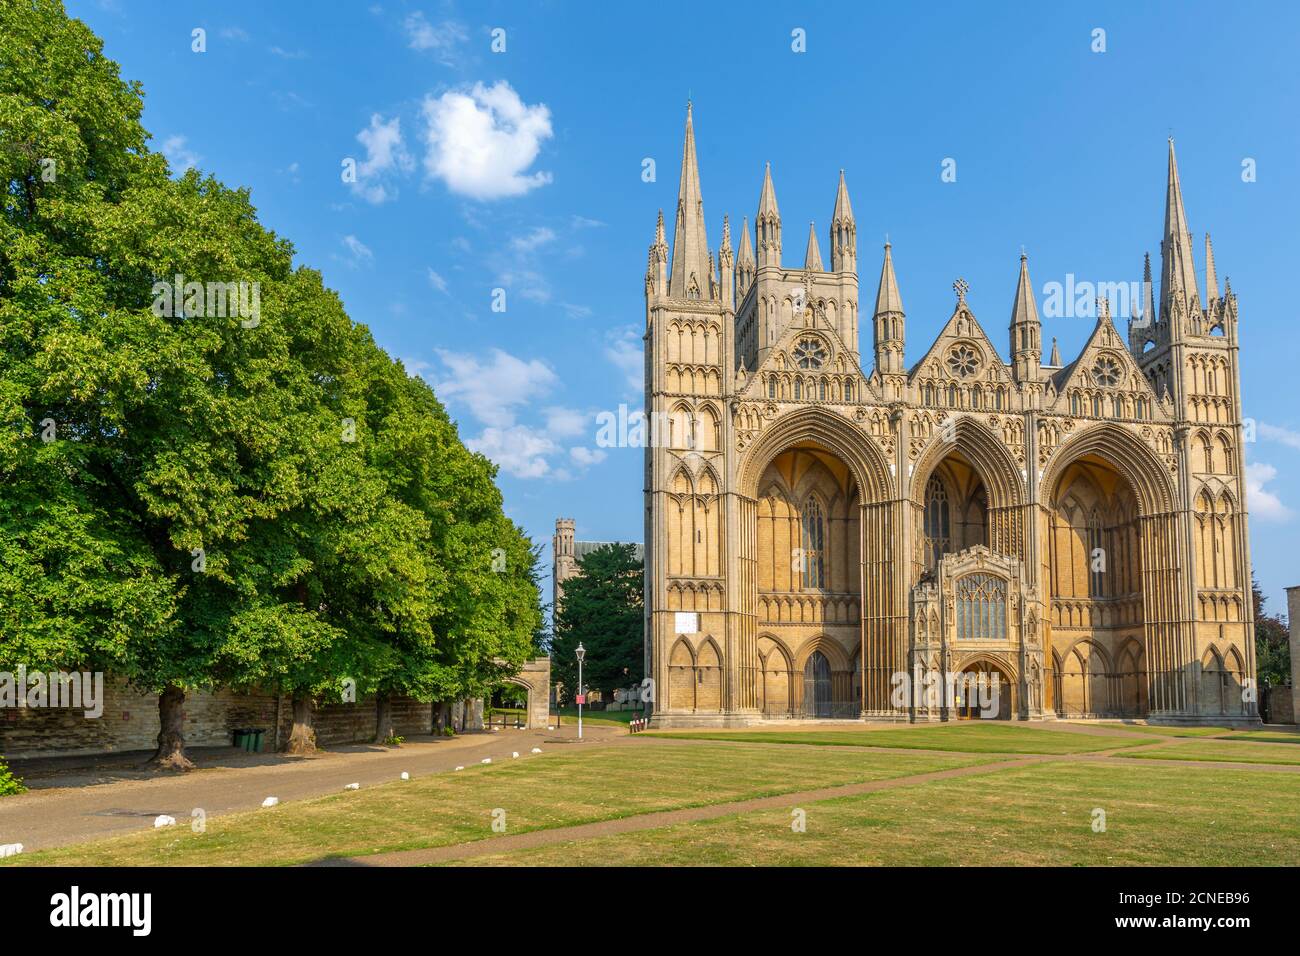 Blick auf die gotische Fassade der Peterborough Cathedral vom Dean's Court, Peterborough, Northamptonshire, England, Großbritannien, Europa Stockfoto